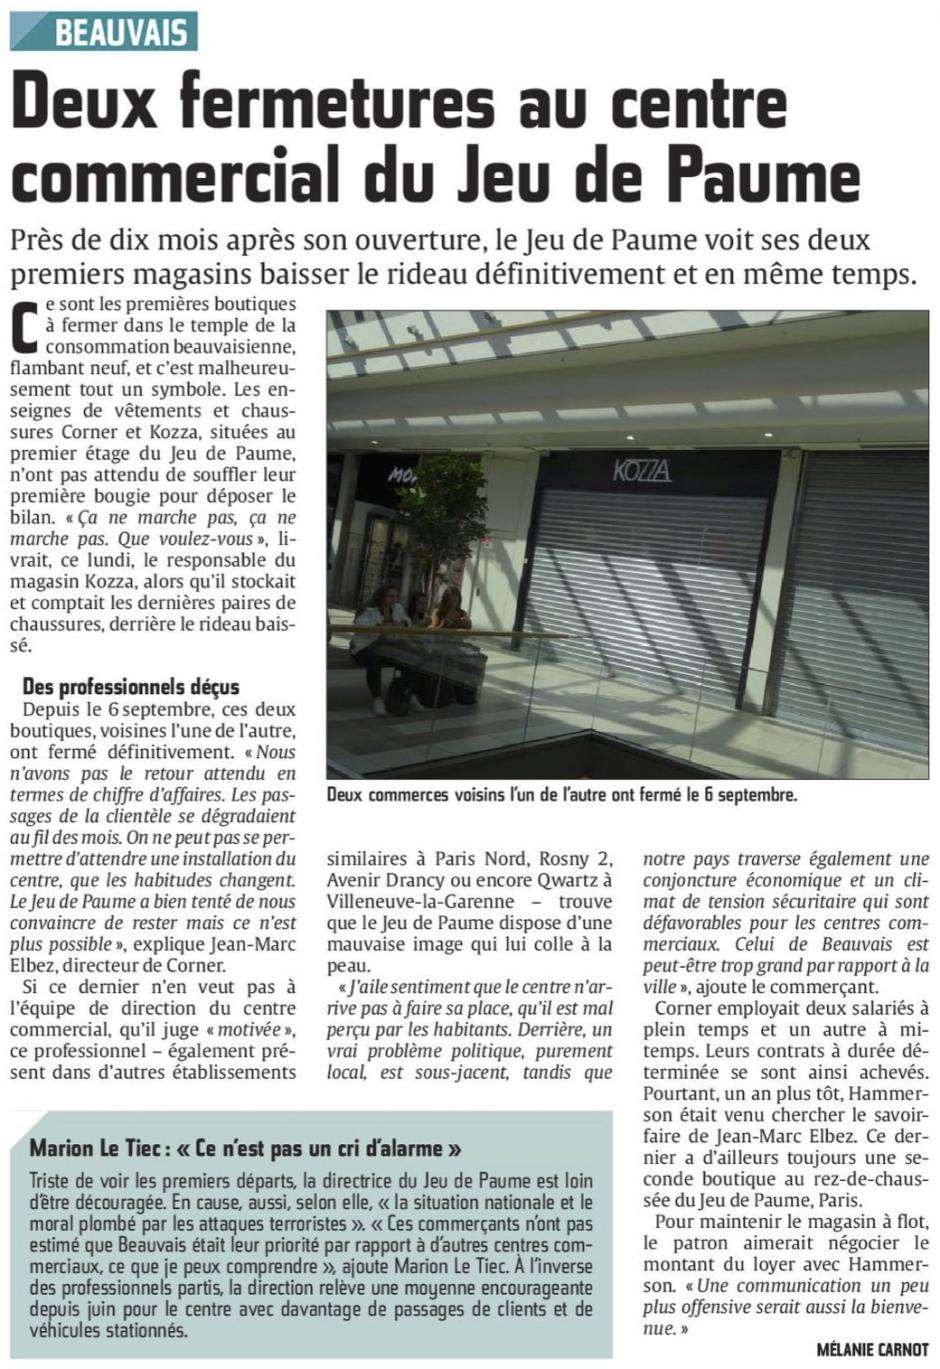 20160913-CP-Beauvais-Deux fermetures au centre commercial du Jeu de Paume